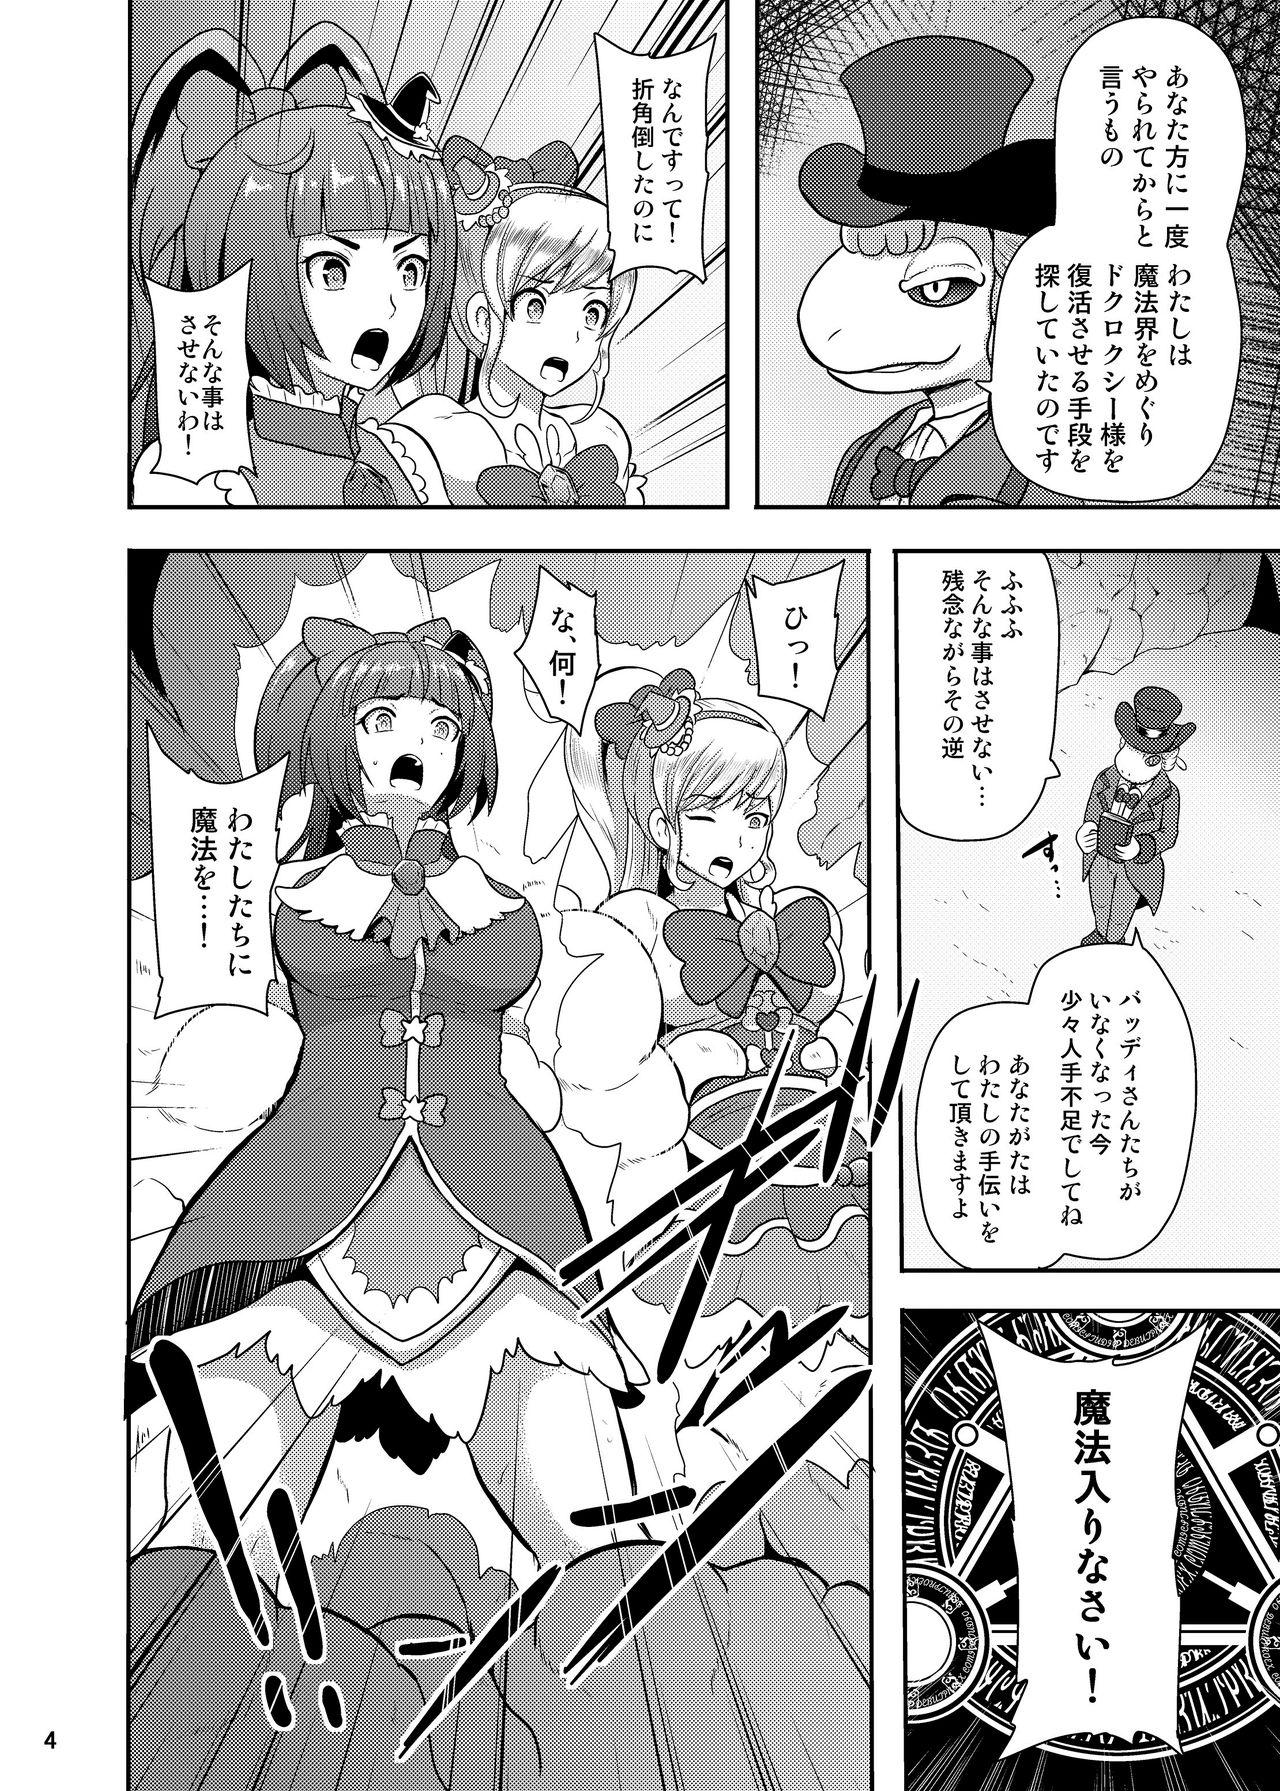 Suruba Densetsu no Mahou Tsukai wa Kyou Inaku Narimashita - Maho girls precure Game - Page 4